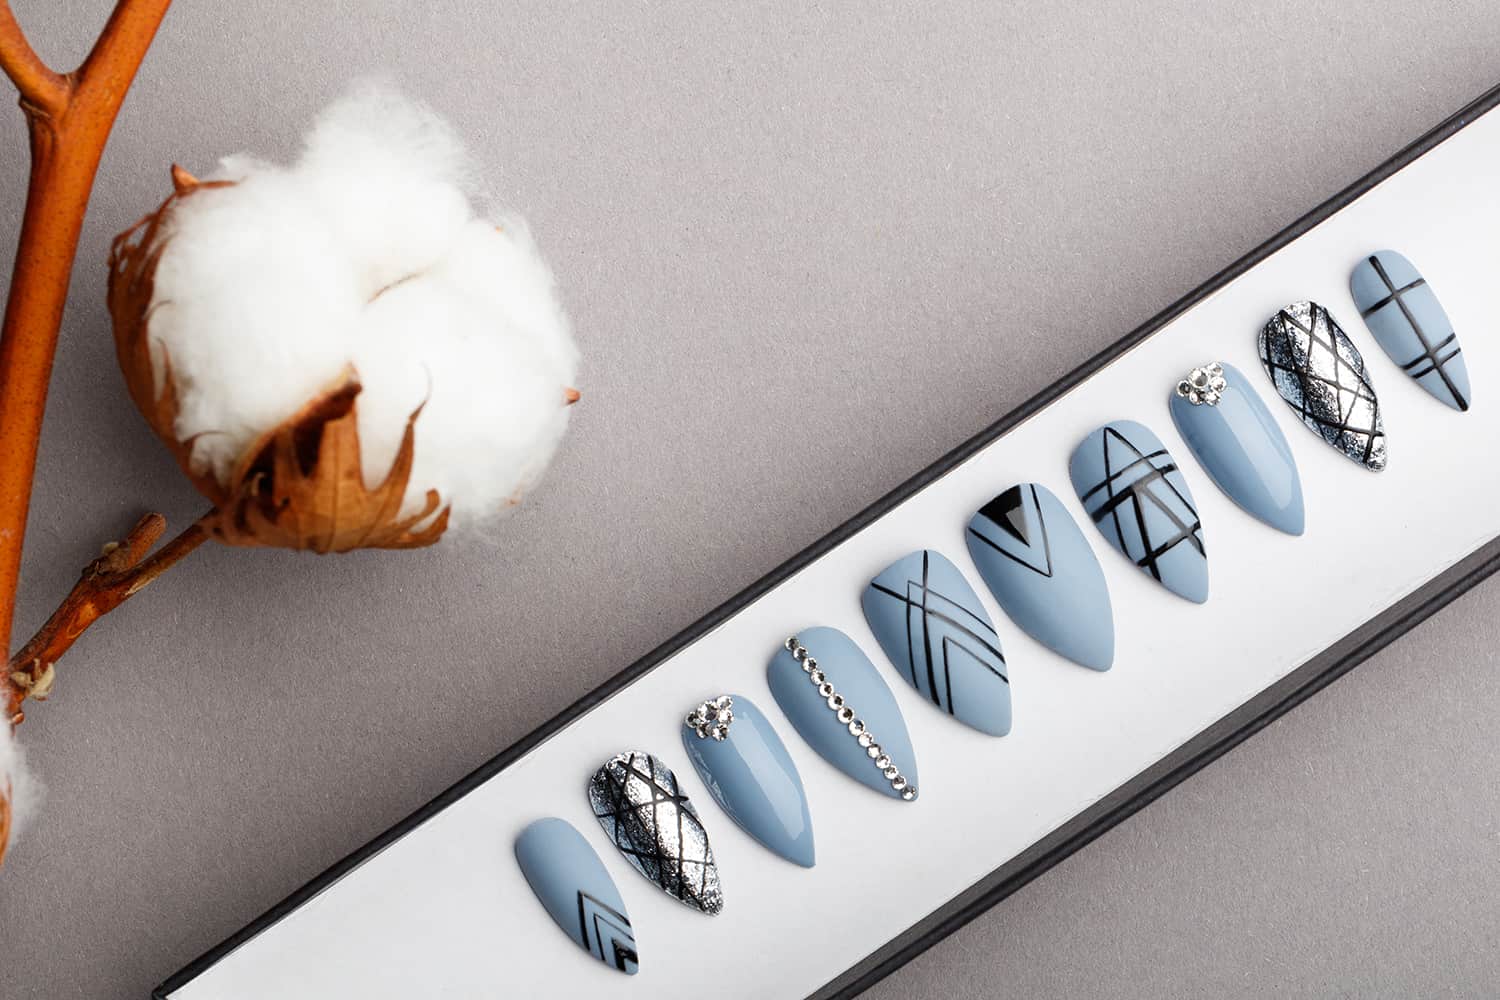 Gothic Geometry Press on Nails with Swarovski Crystals | Black Pattern | Hand painted Nail Art | Fake Nails | False Nails | Bling Nails